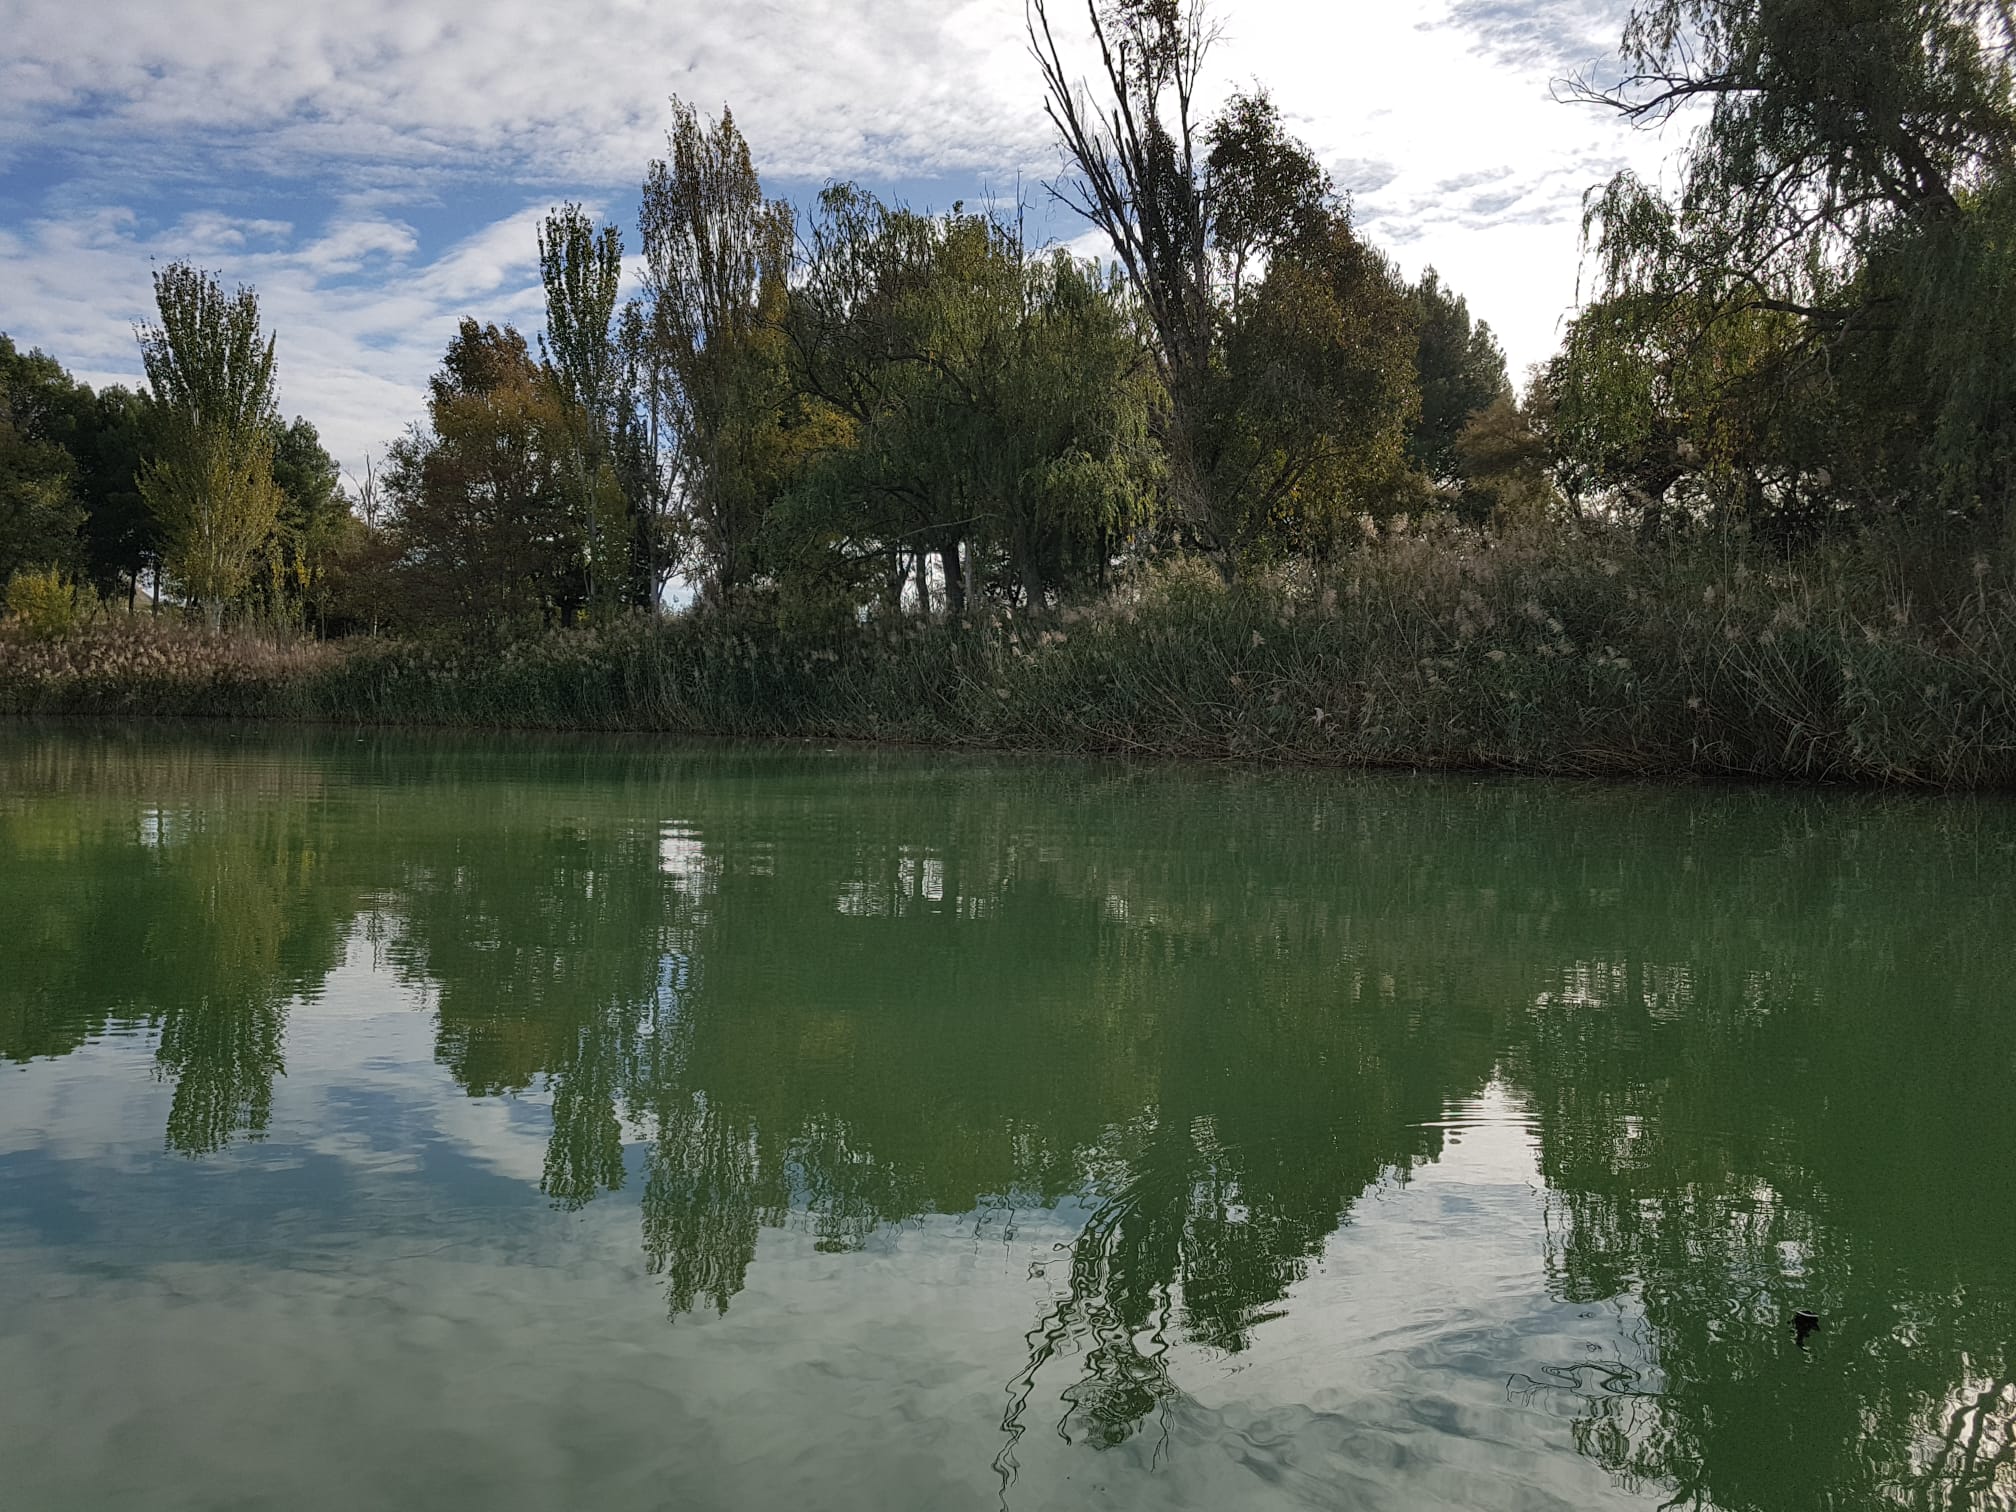 Durante esta semana, y como consecuencia de un proceso natural, la laguna El Raso ha sufrido un cambio de coloración en la lámina de agua provocada por la falta de oxígeno, así como la emisión de un olor desagradable